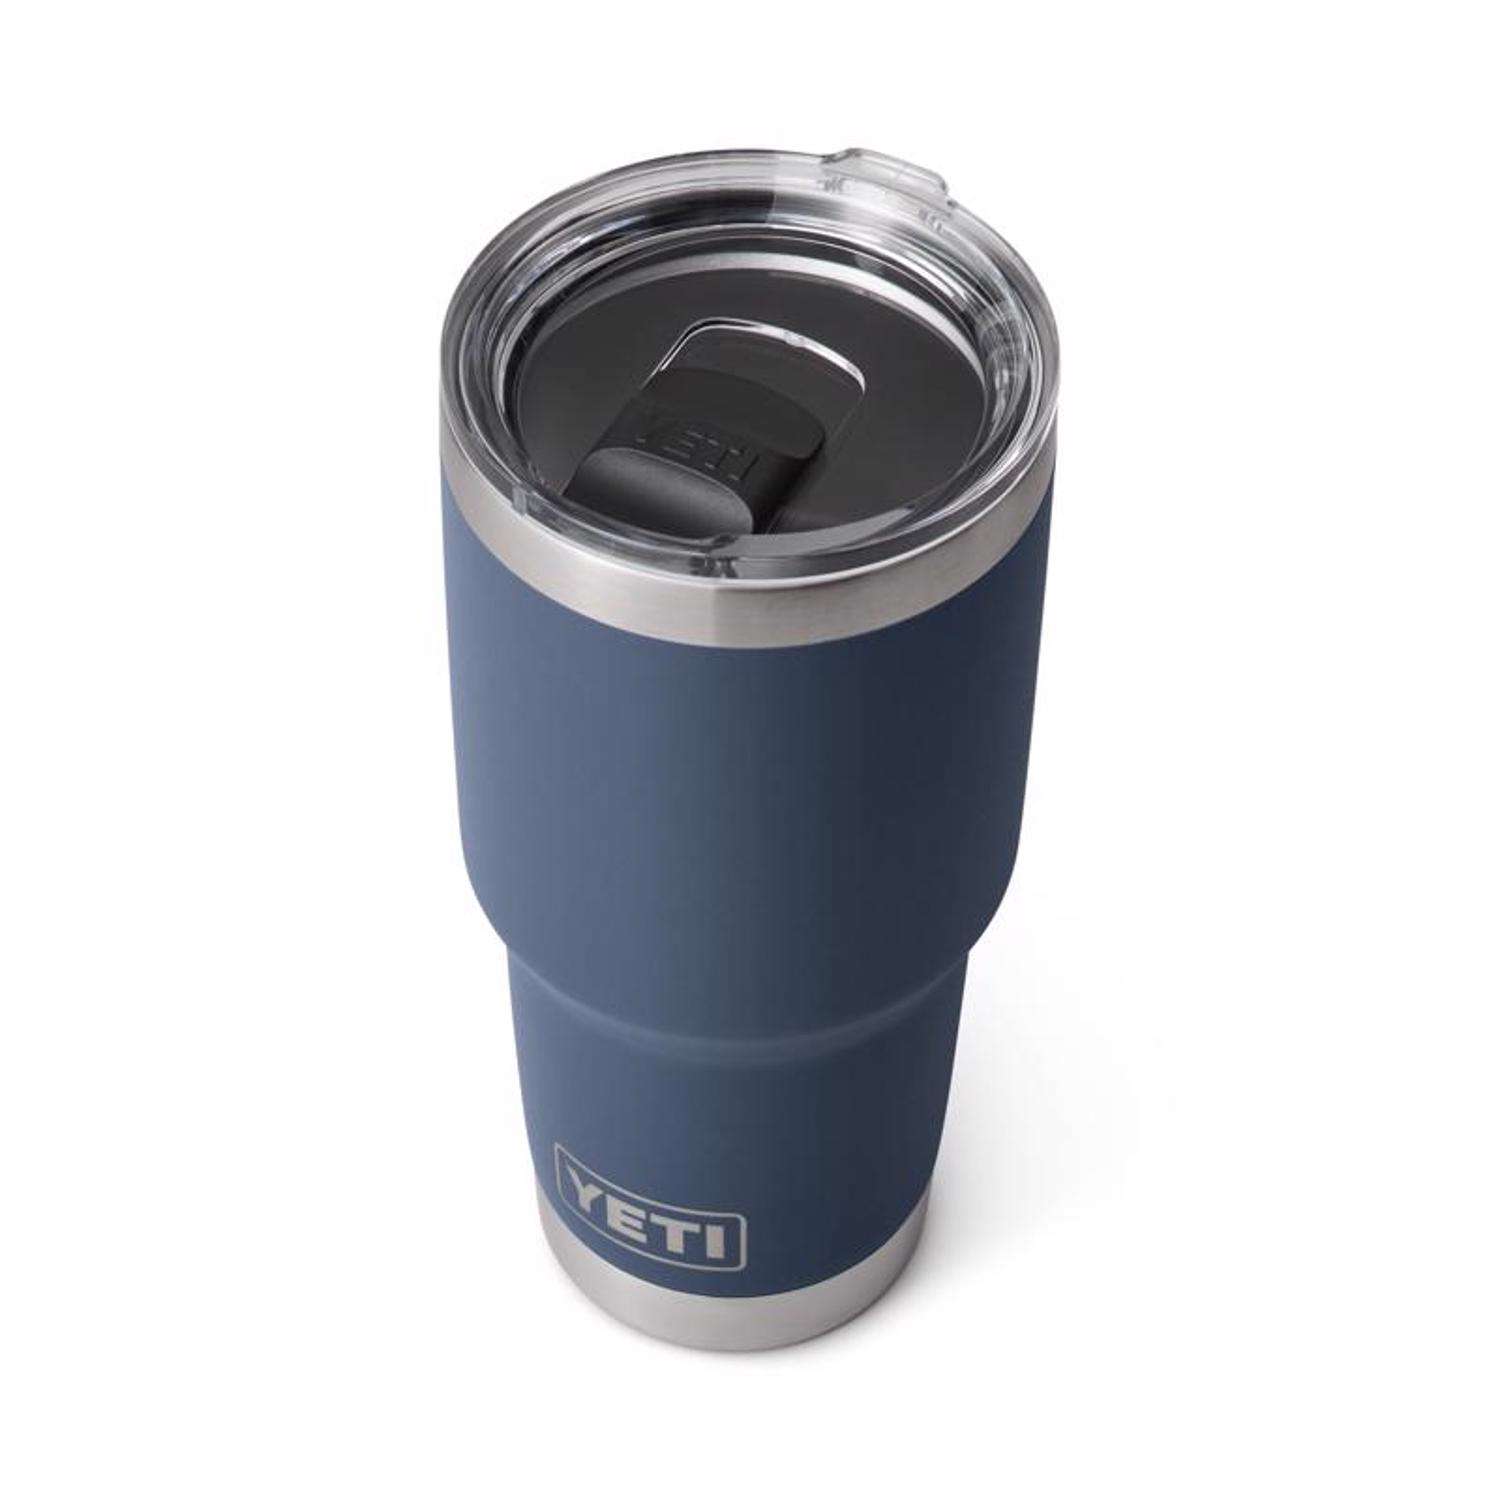 YETI Rambler 30 oz BPA Free Tumbler with MagSlider Lid